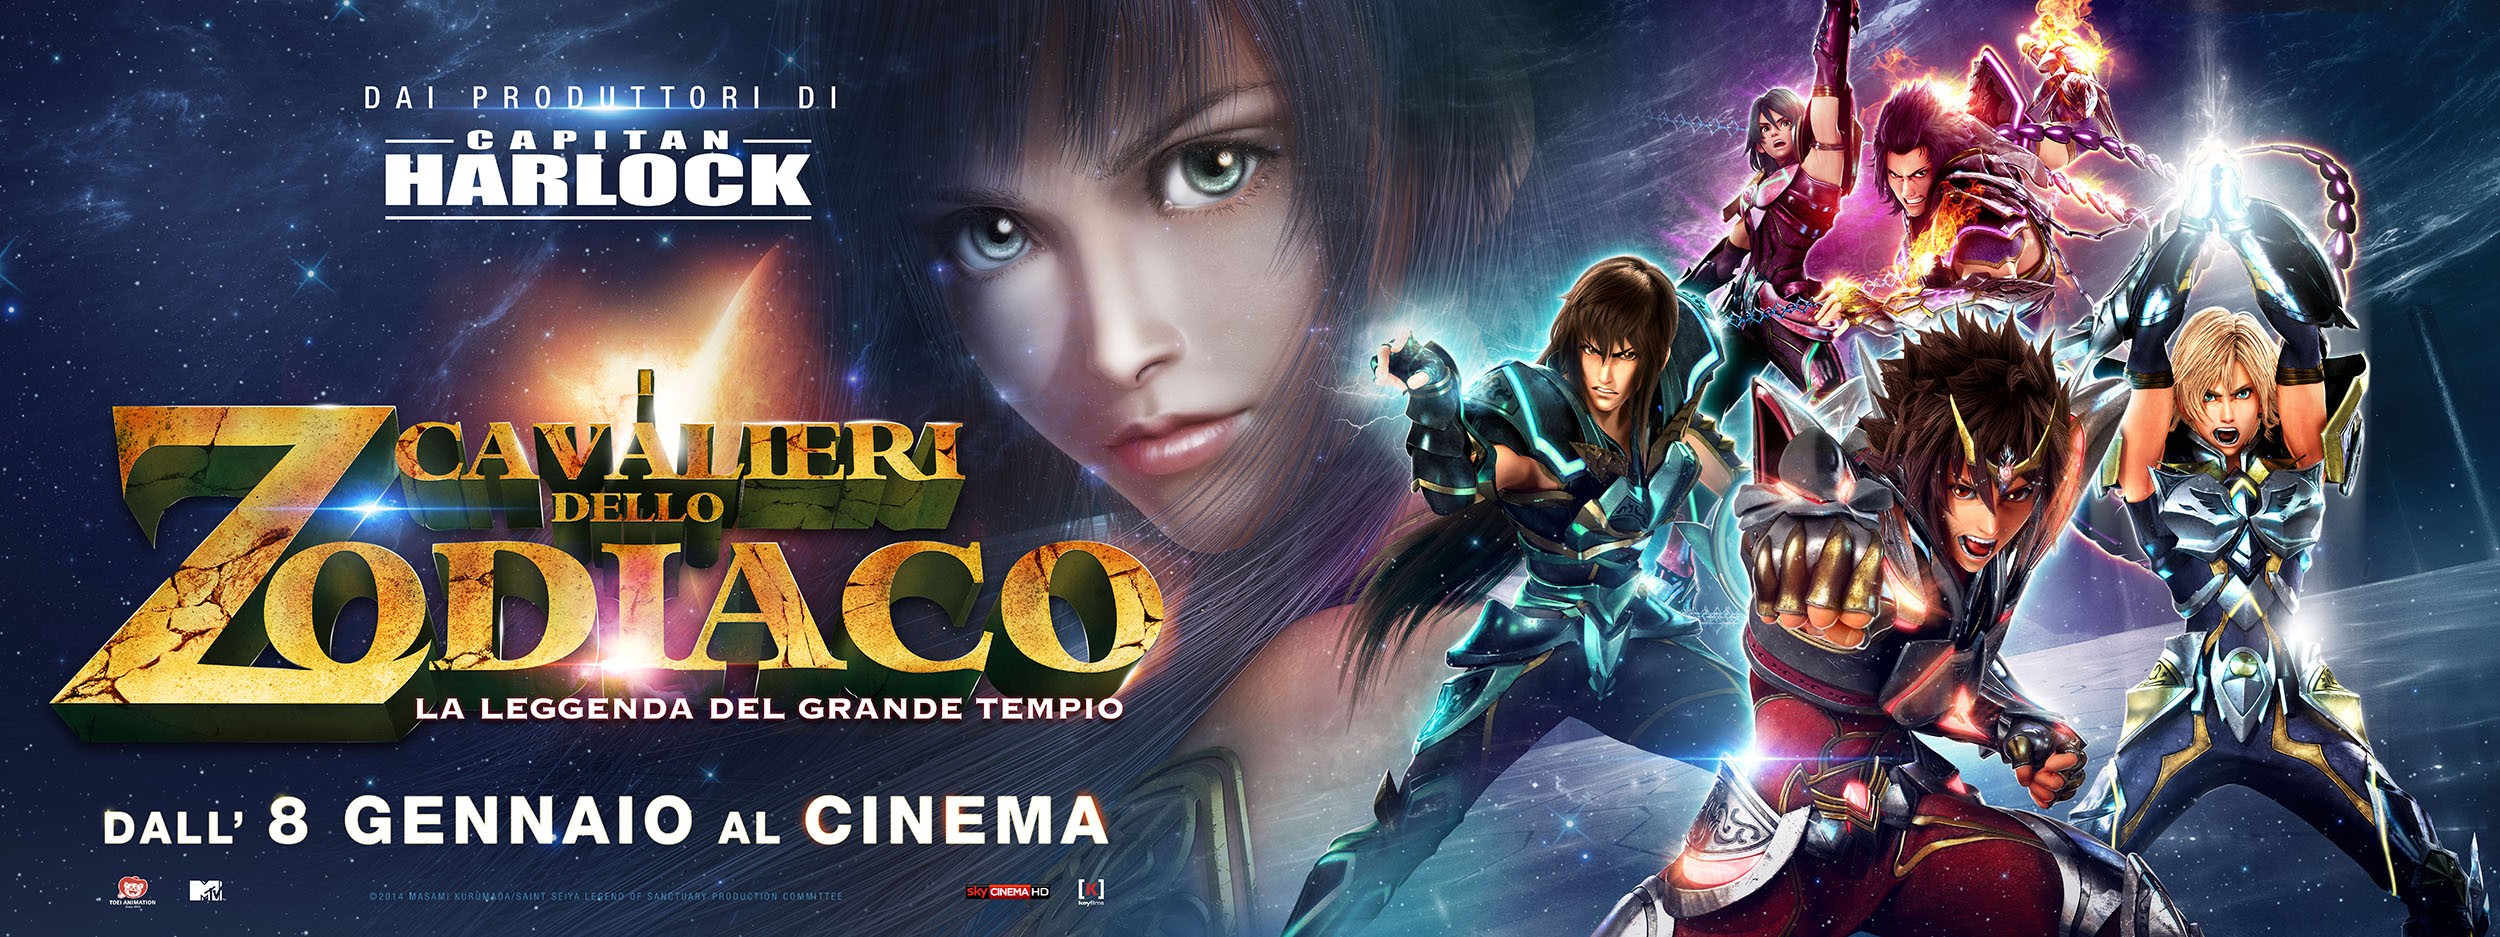 Mega Sized Movie Poster Image for I Cavalieri dello Zodiaco - La leggenda del Grande Tempio (#9 of 9)